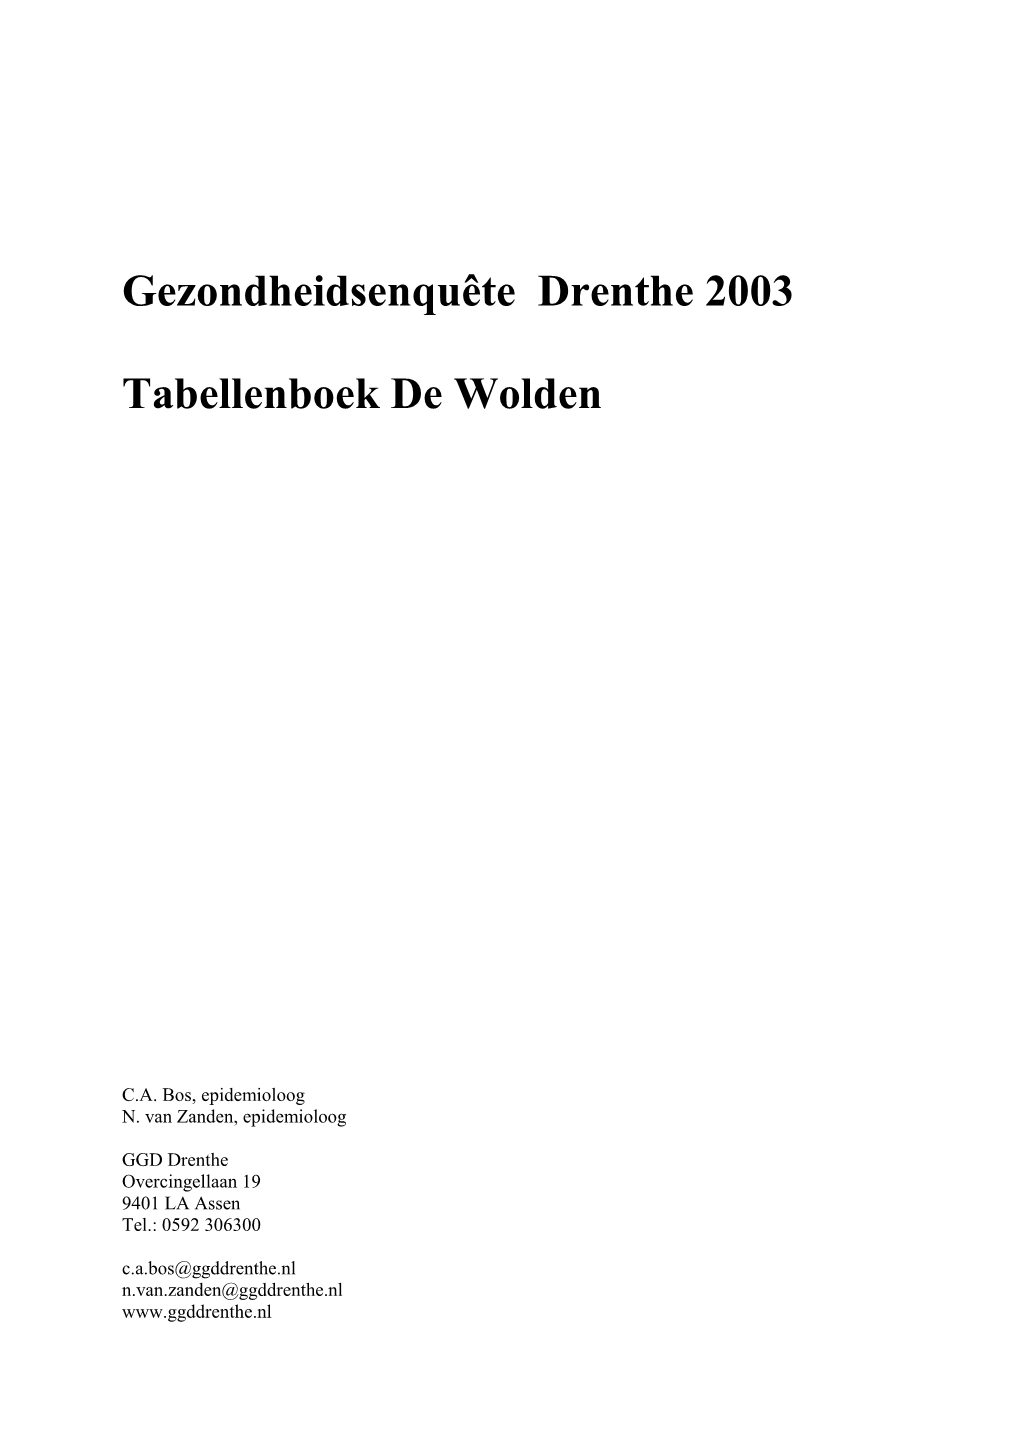 Gezondheidsenquête Drenthe 2003 Tabellenboek De Wolden